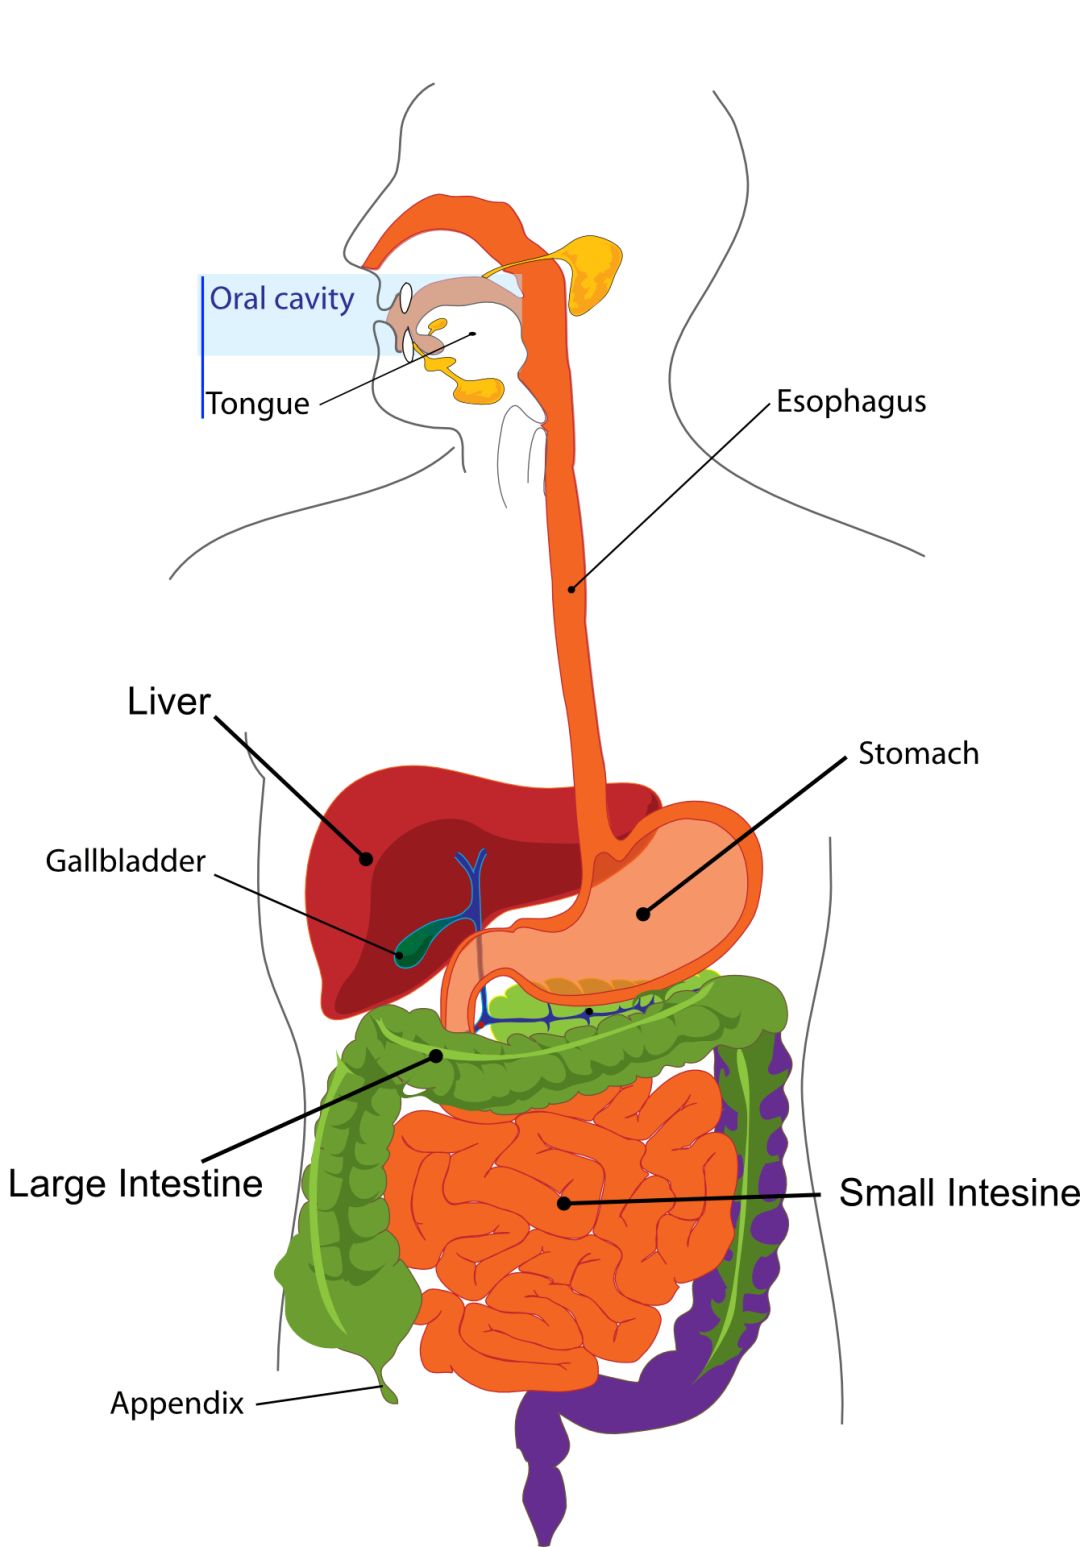 胆汁的排泄途径示意图图片